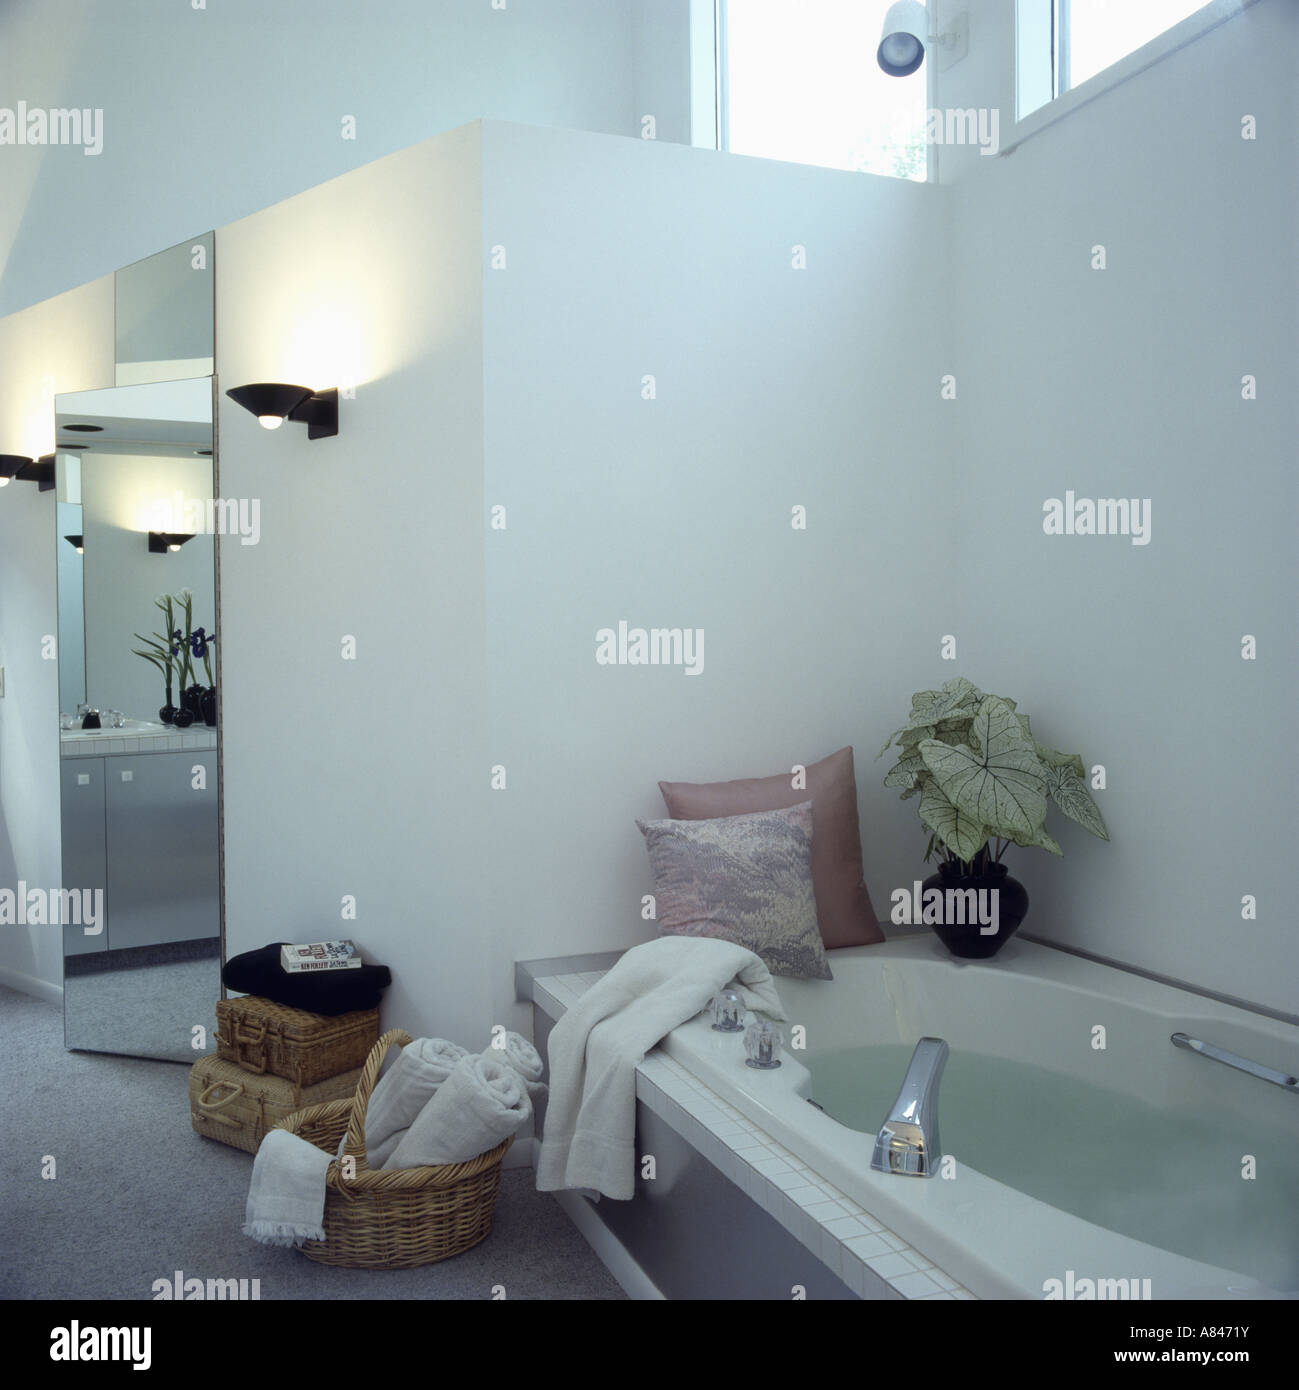 Cuscini sul bordo della vasca da bagno in bianco e moderno bagno con parete illuminata-luci e asciugamani bianchi nel cestello Foto Stock